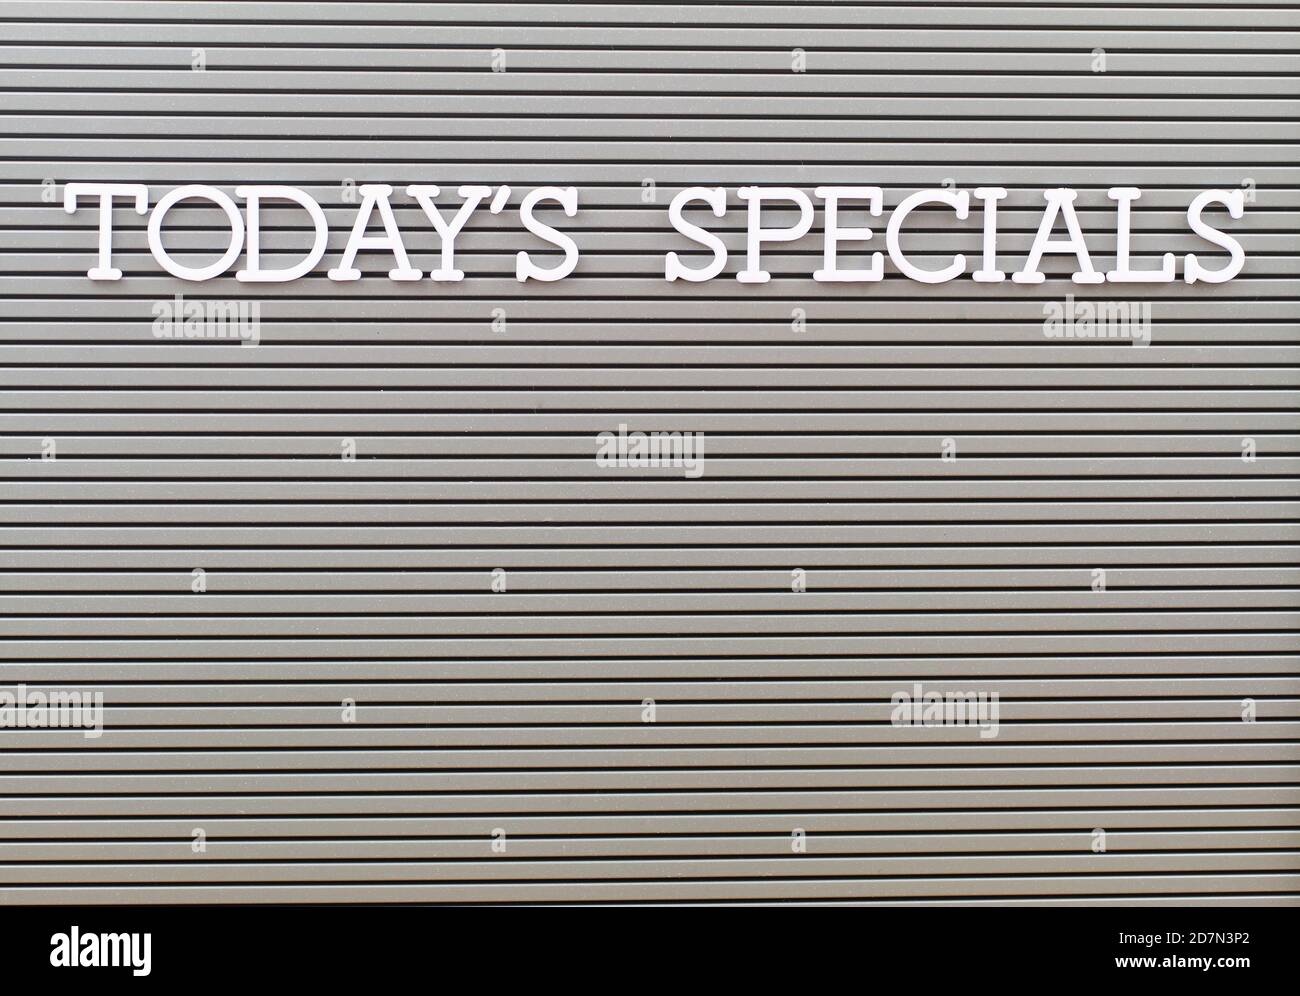 Heutige Specials mit weißen Plastikbuchstaben auf grauem Brett geschrieben Mit Kopierbereich Stockfoto